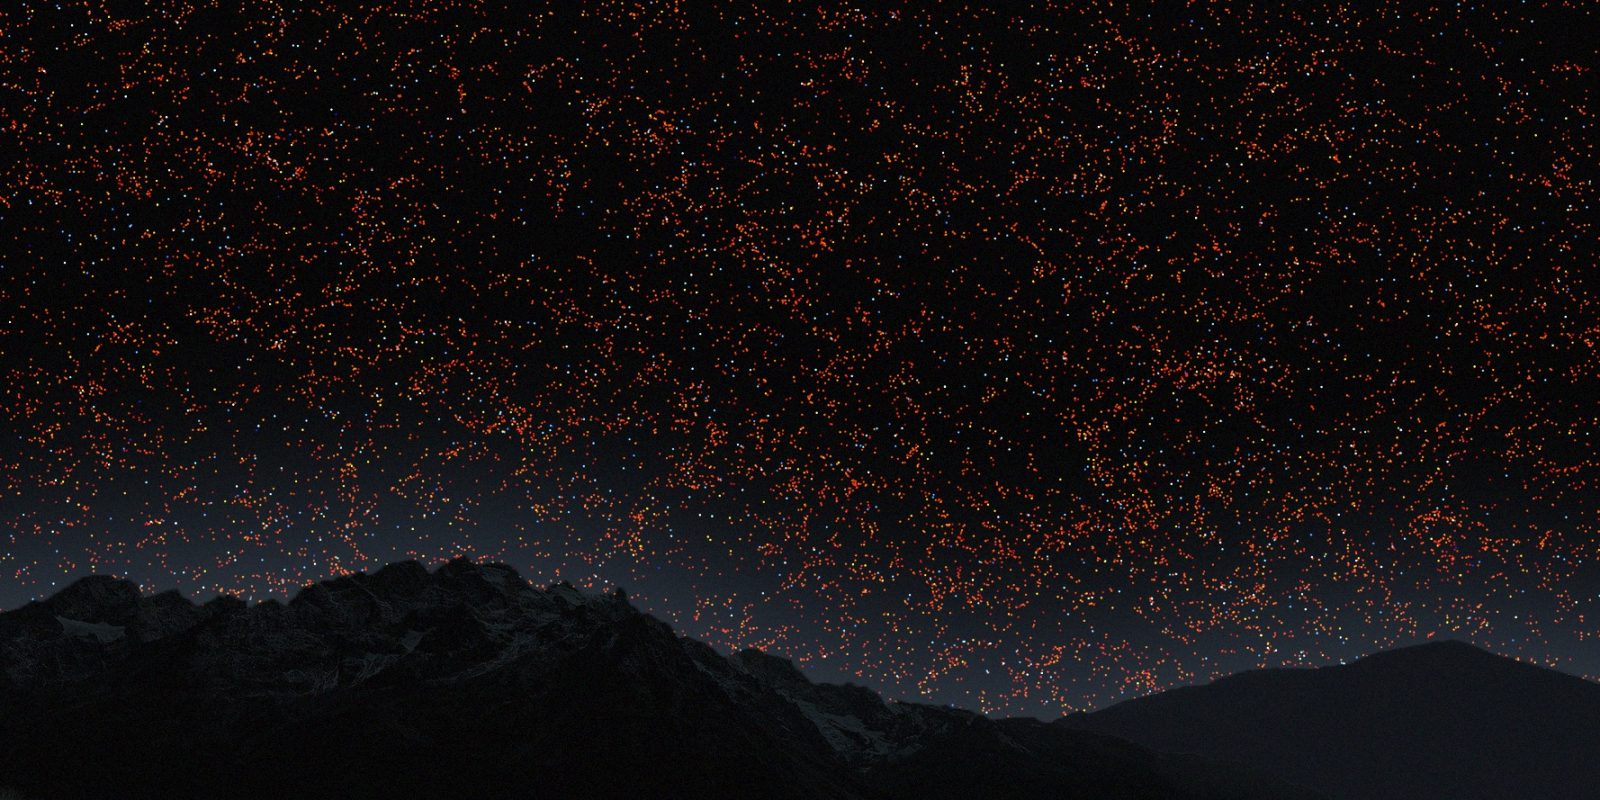 Απόκοσμες εικόνες: Διαδραστικός χάρτης σας «ταξιδεύει» σε 200.000 γαλαξίες – Περιηγηθείτε με ένα κλικ (βίντεο)